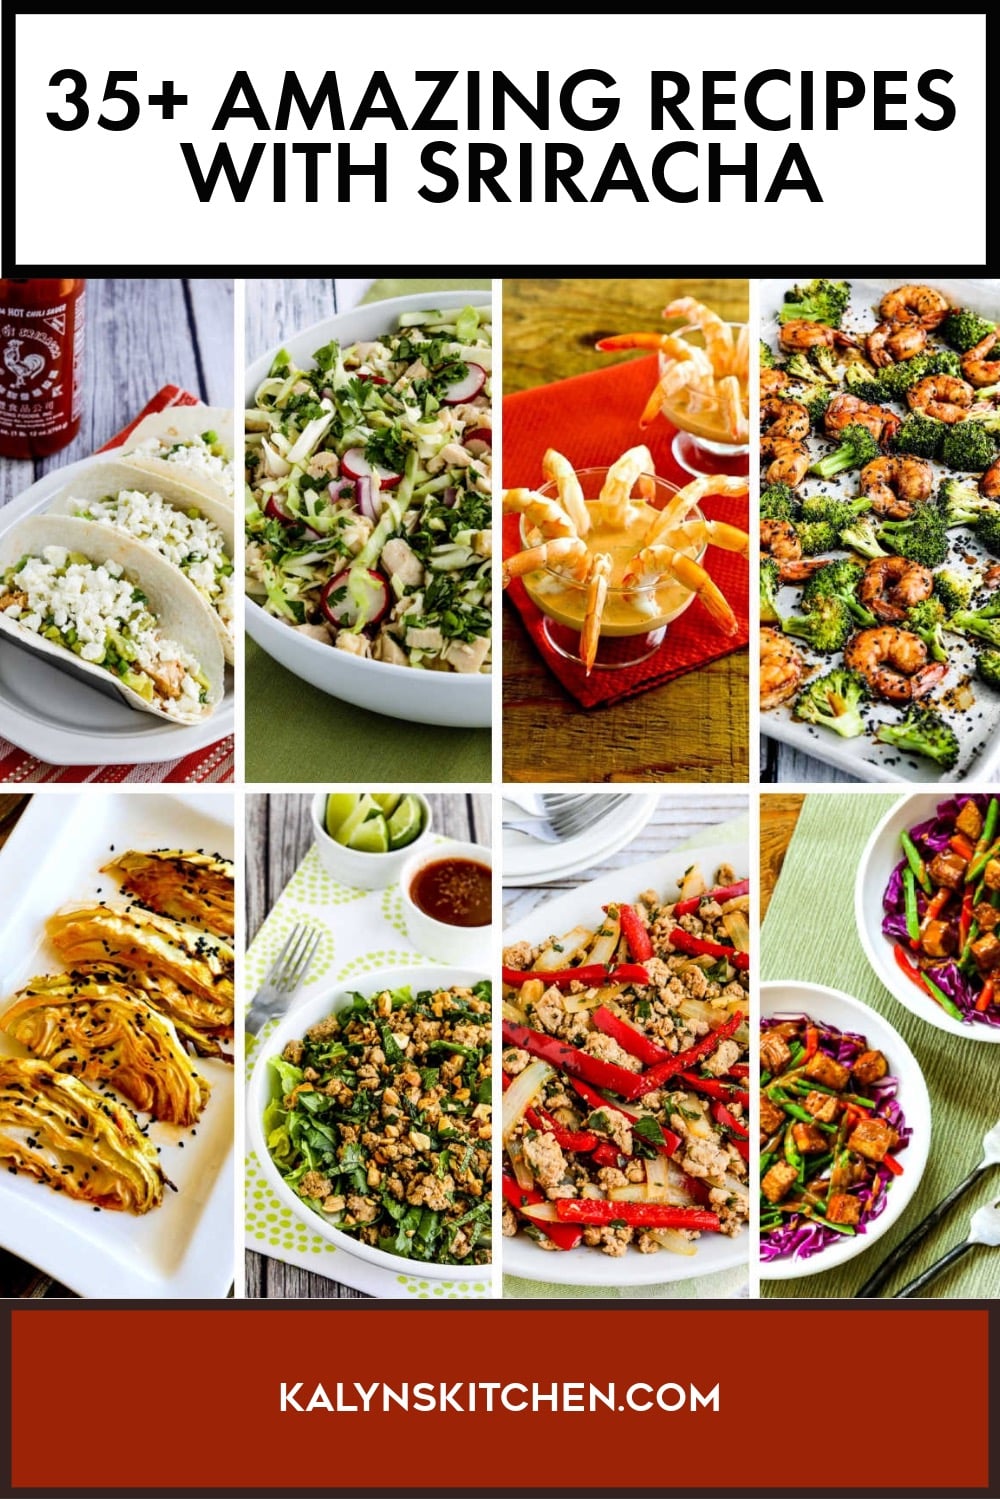 Pinterest image of 35+ Amazing Recipes with Sriracha